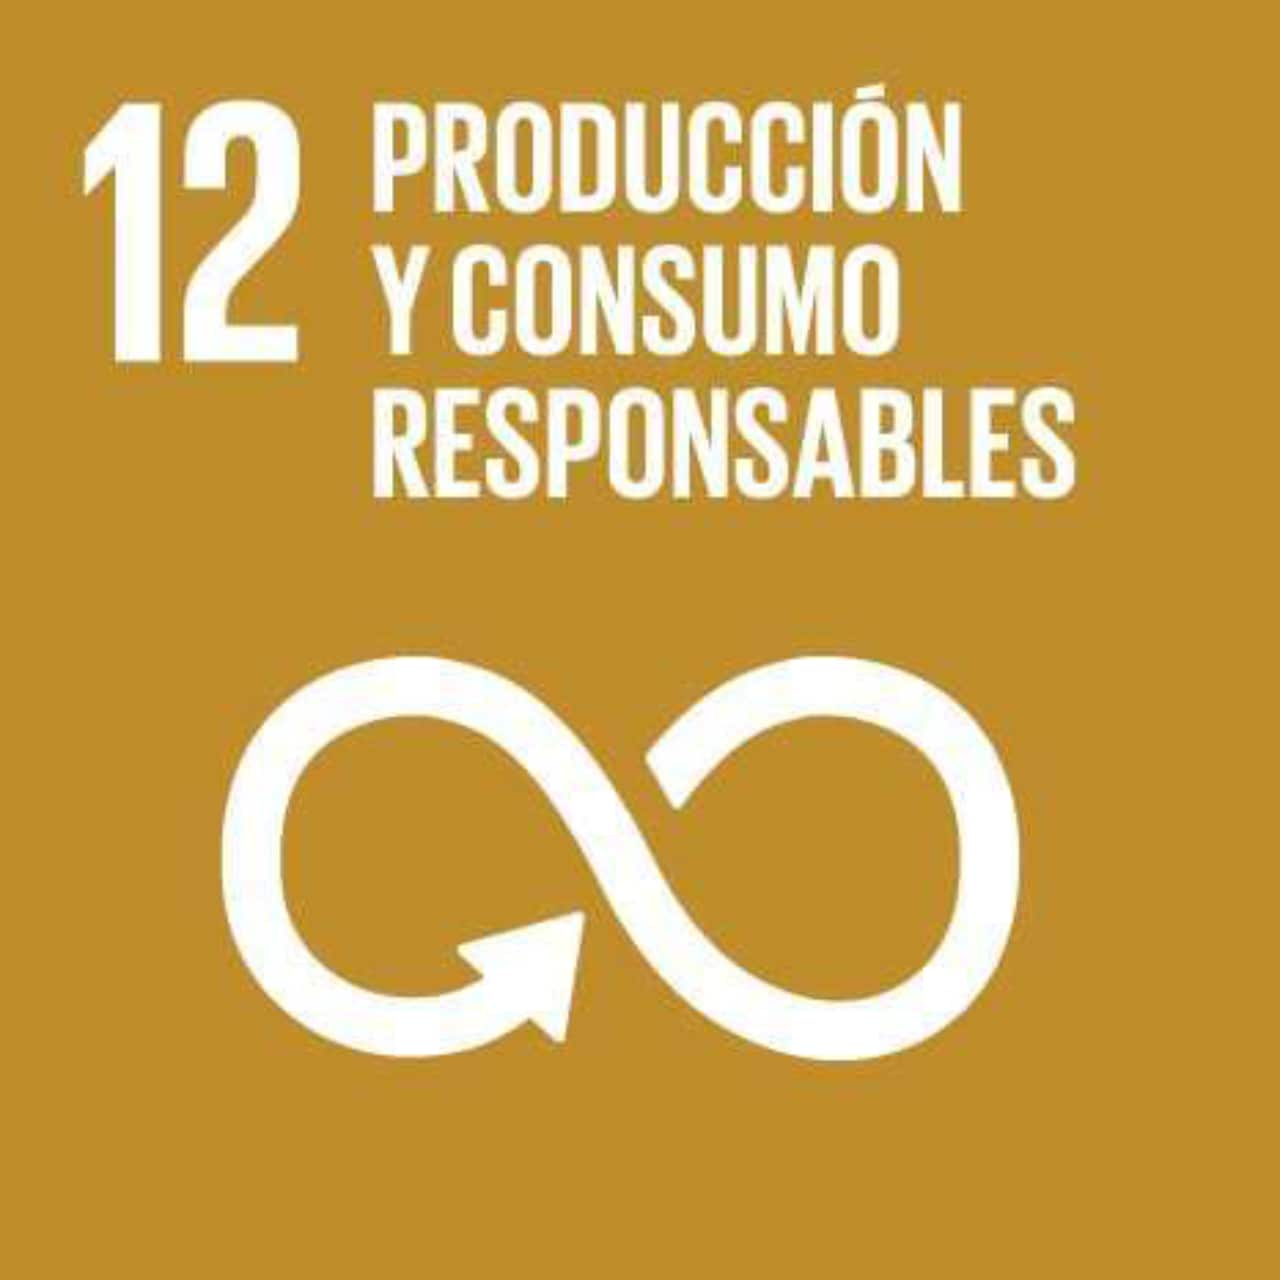 Imagen que representa el ODS número Doce - Producción y Consumo Responsables, con un fondo marrón claro y el símbolo del infinito.